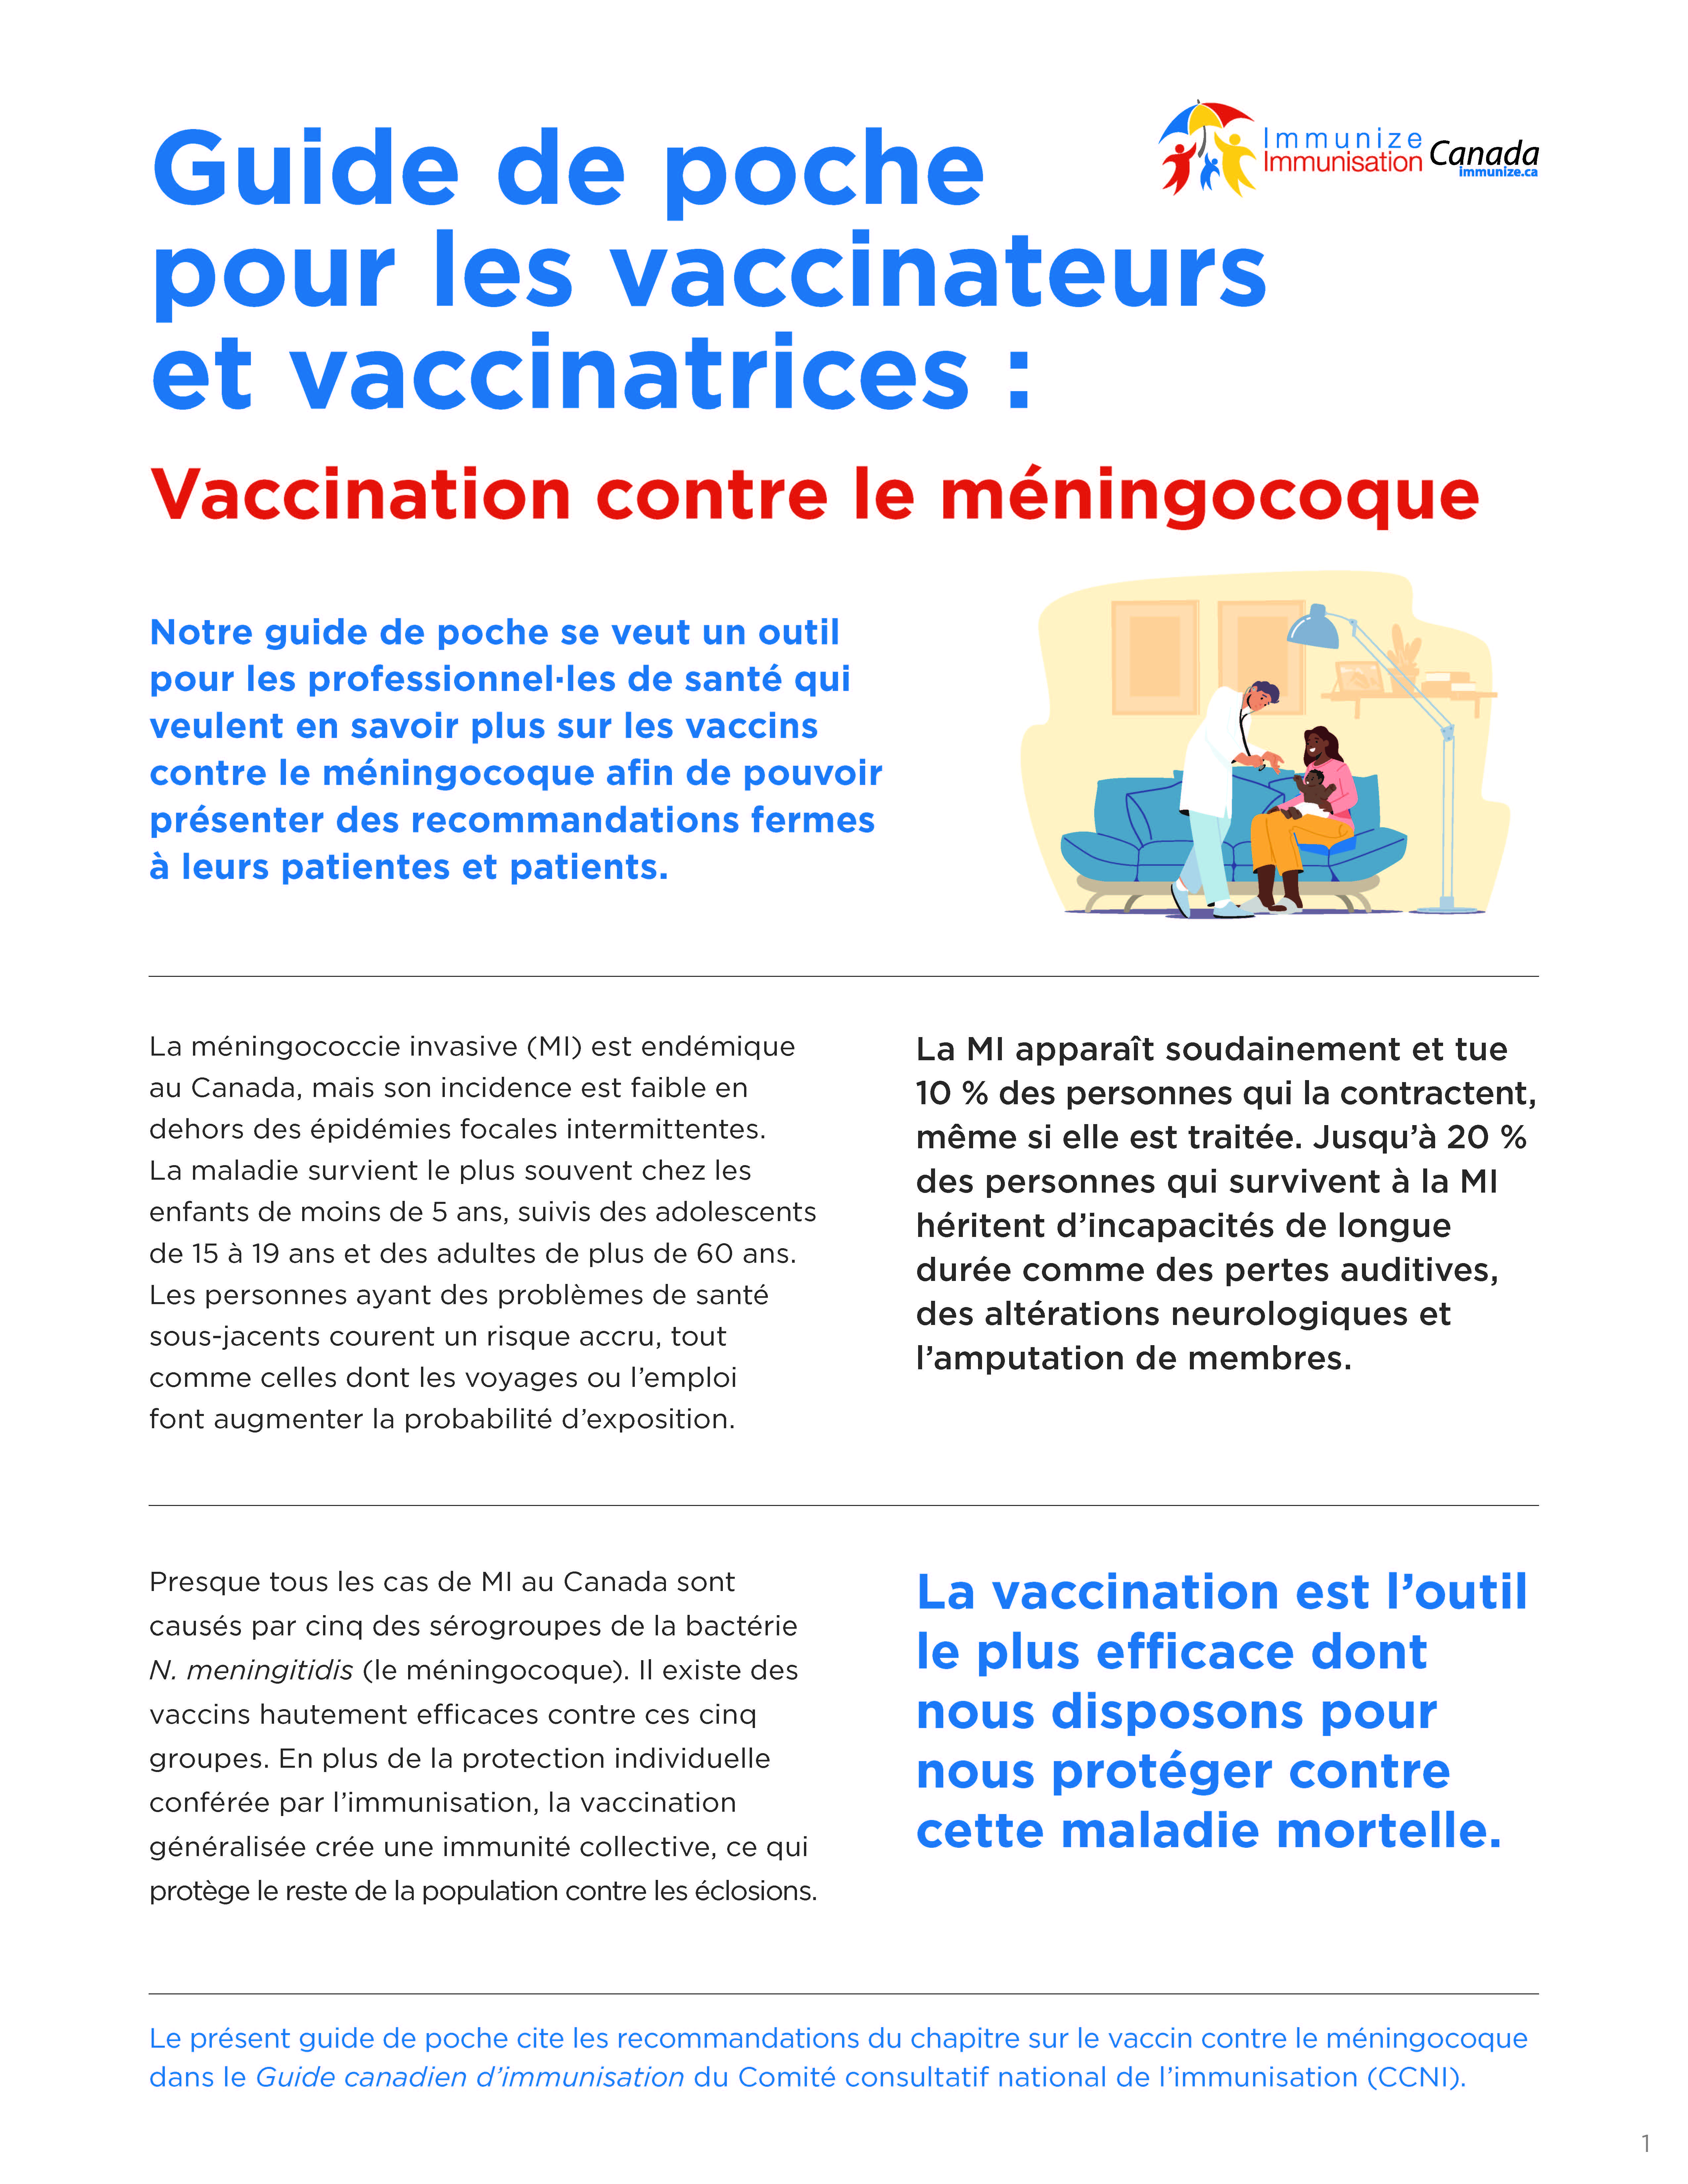 Guide de poche pour les vaccinateurs et vaccinatrices : Vaccination contre le méningocoque